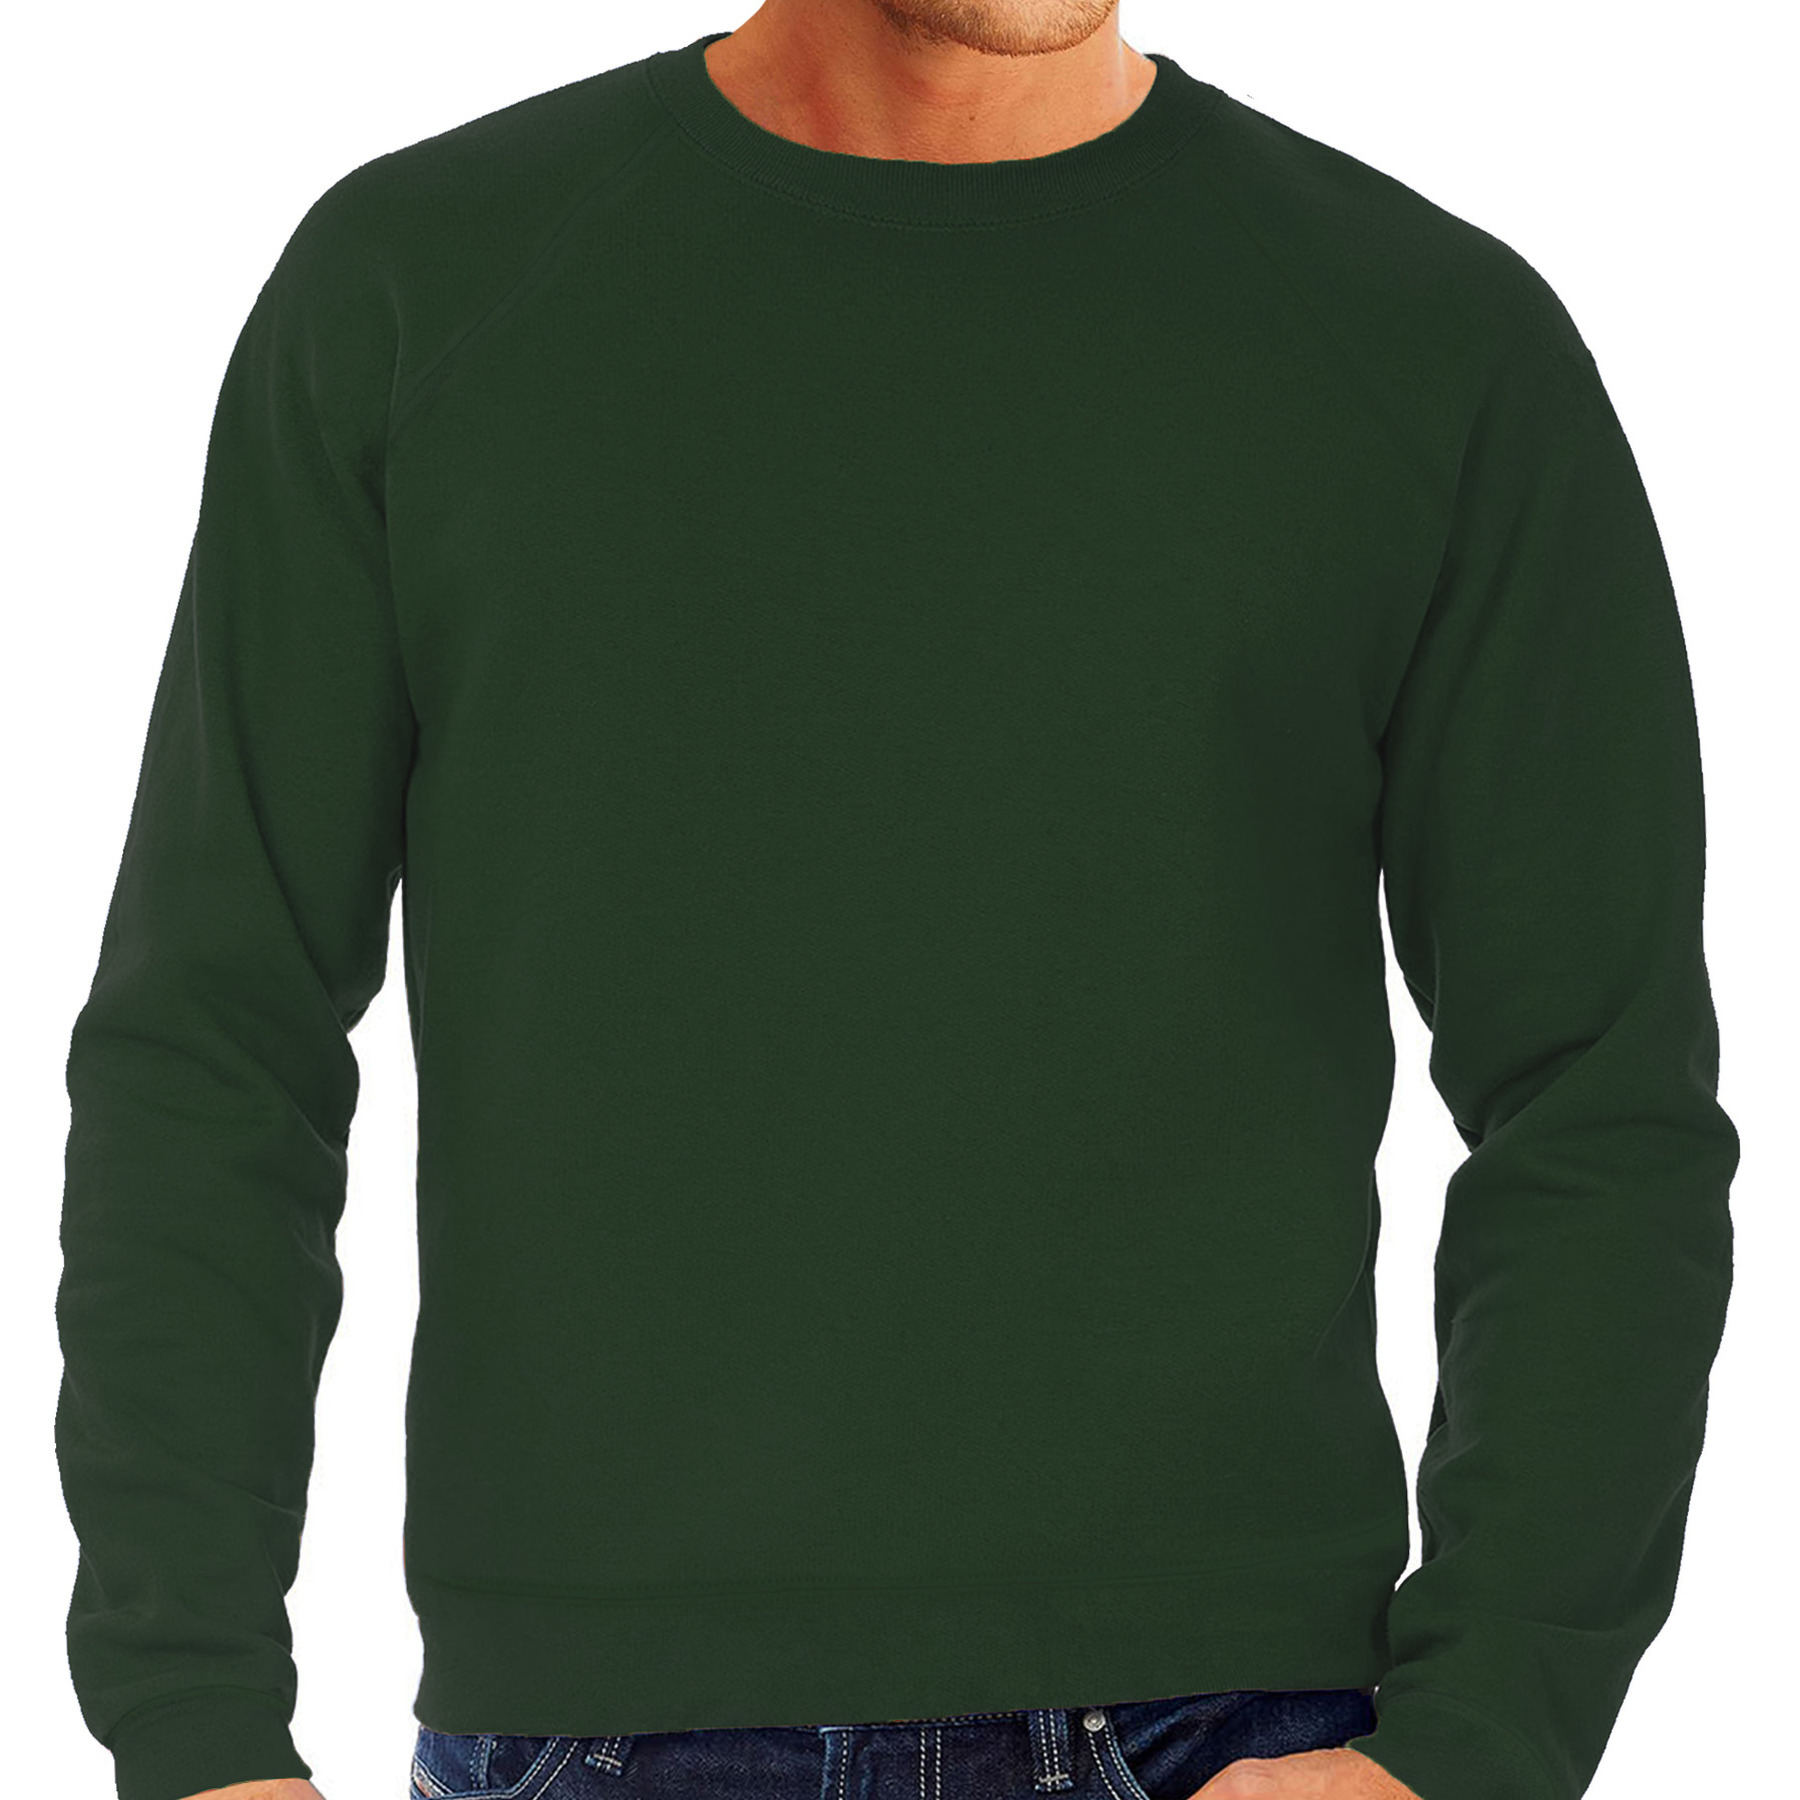 Sweater / sweatshirt trui groen / bottle green met ronde hals en raglan mouwen voor mannen